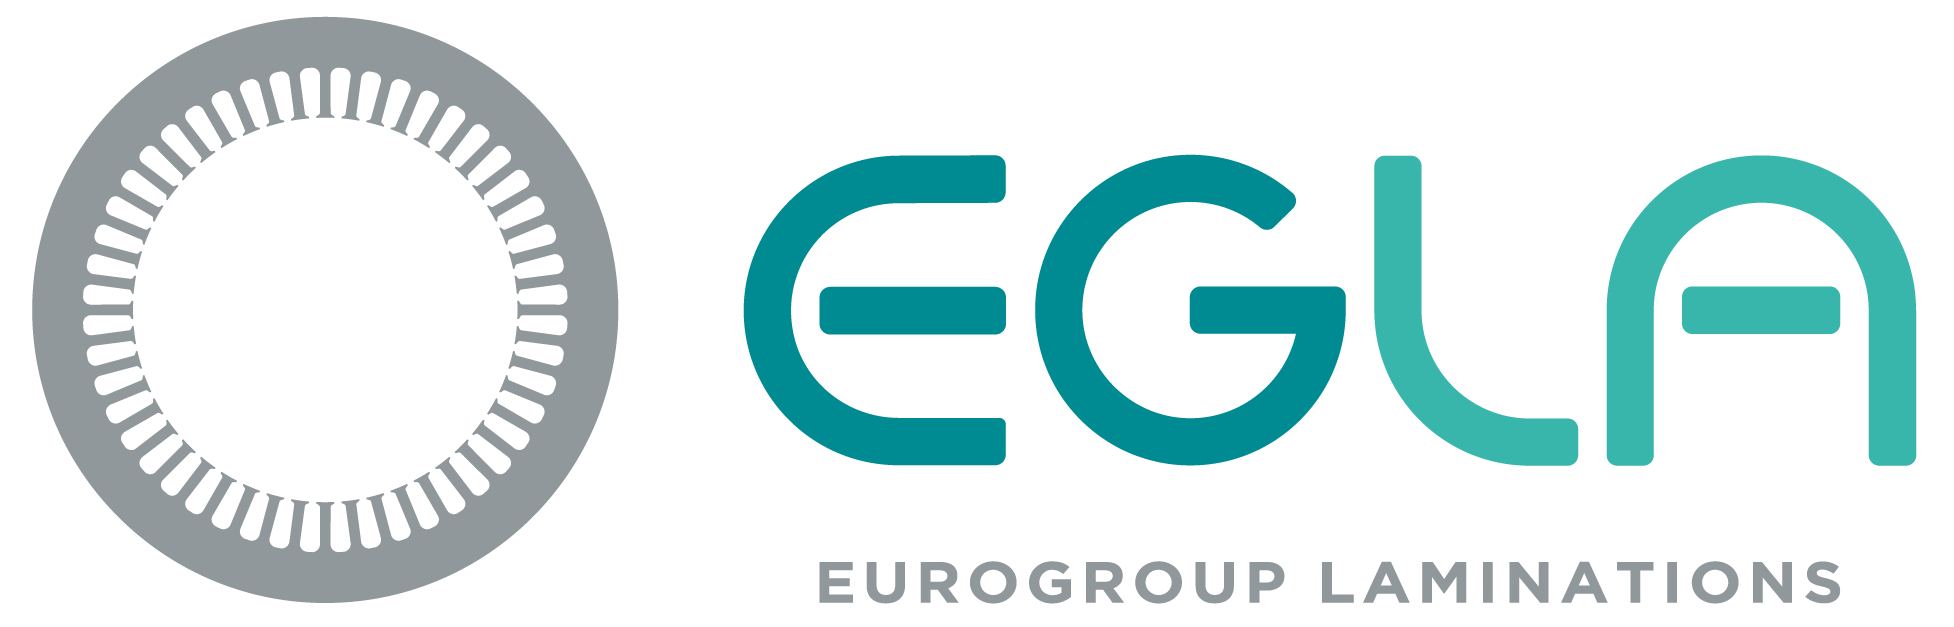 EuroGroup